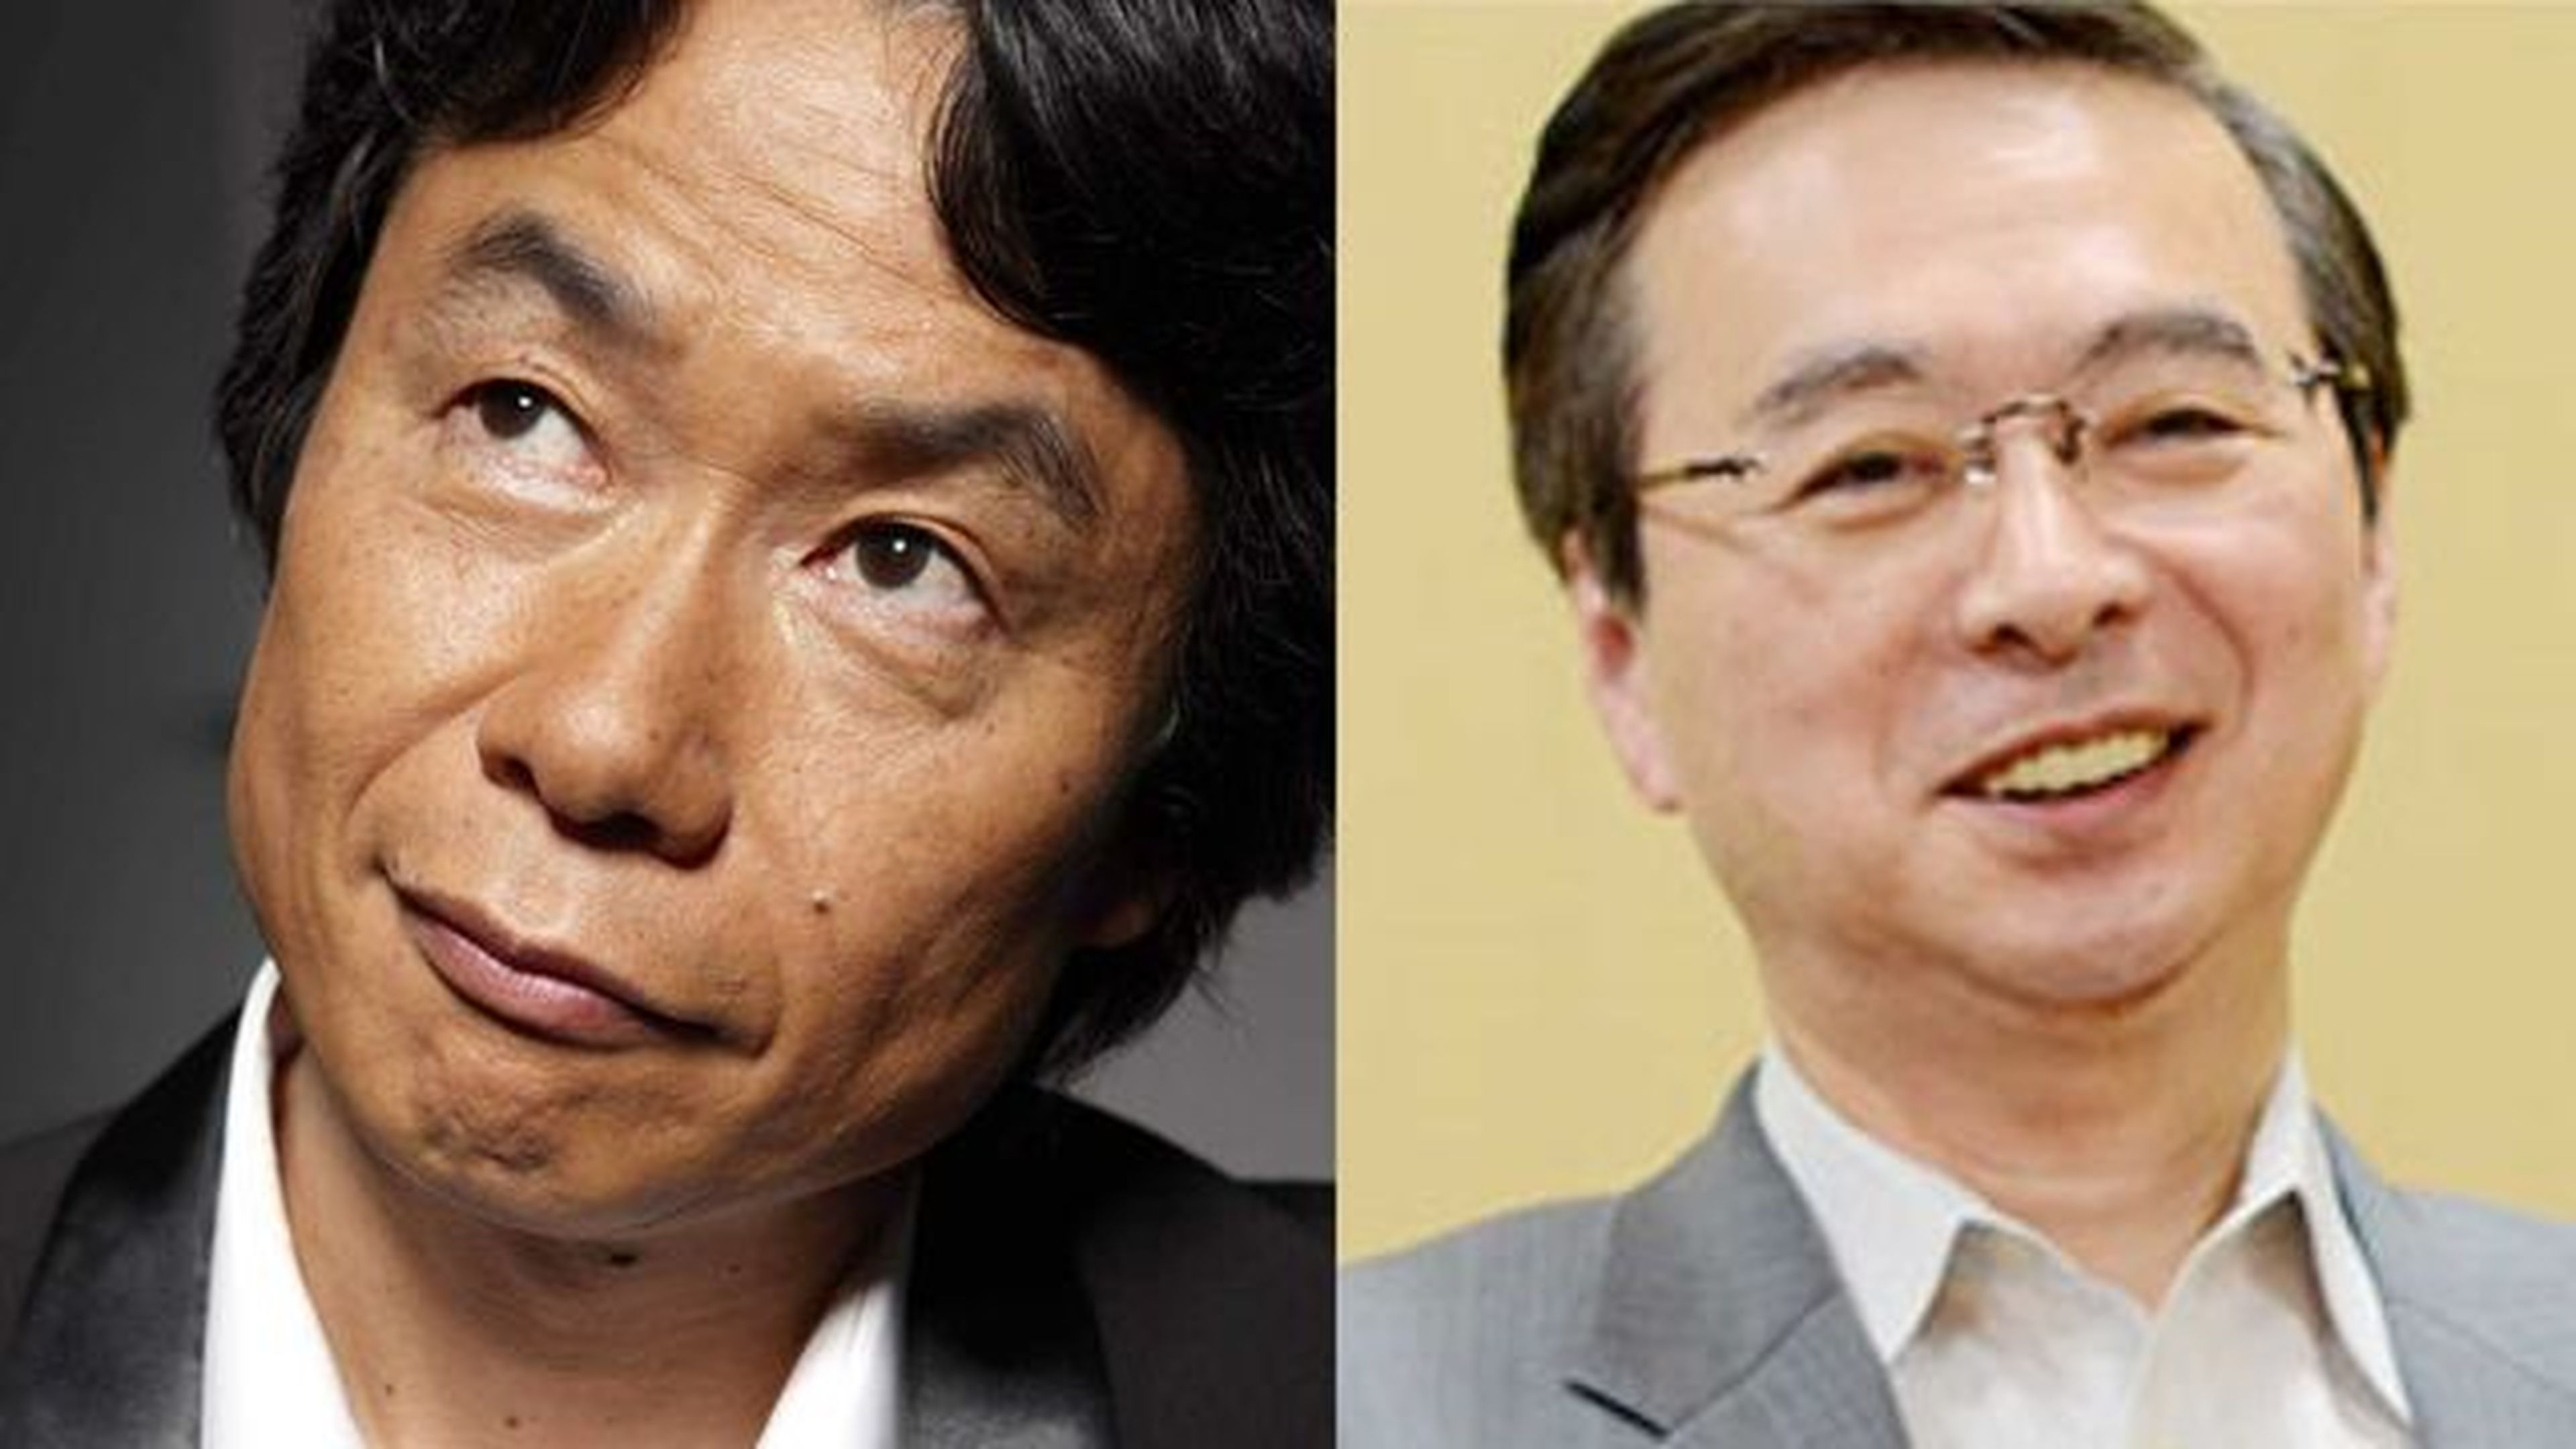 Genyo Takeda favorito para próximo CEO de Nintendo según analistas